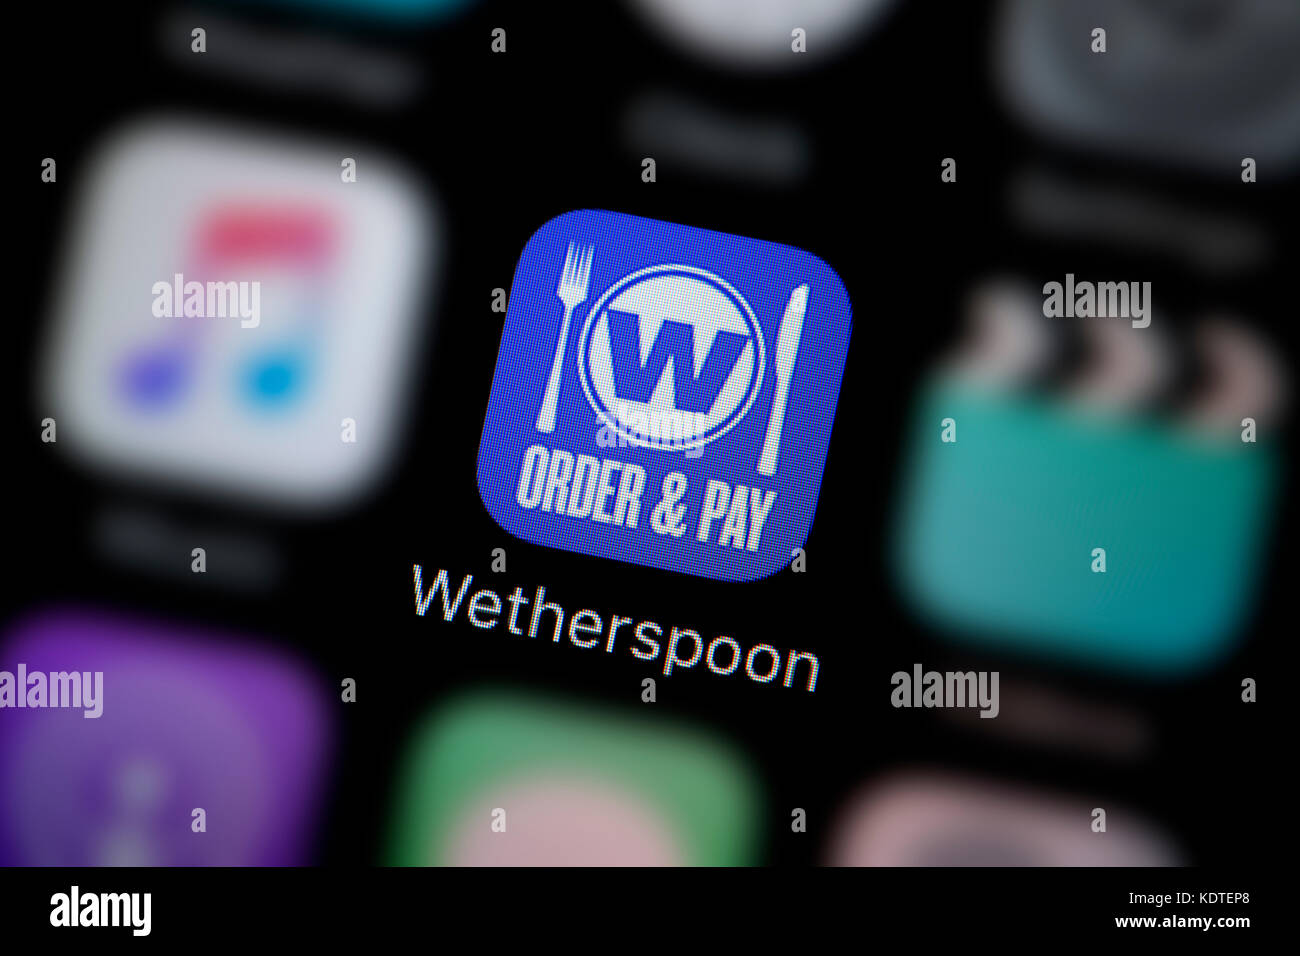 Eine Nahaufnahme der Logo für die wetherspoon Bestellung & App Symbol bezahlen, wie auf dem Bildschirm eines Smartphones (nur redaktionelle Nutzung) Stockfoto